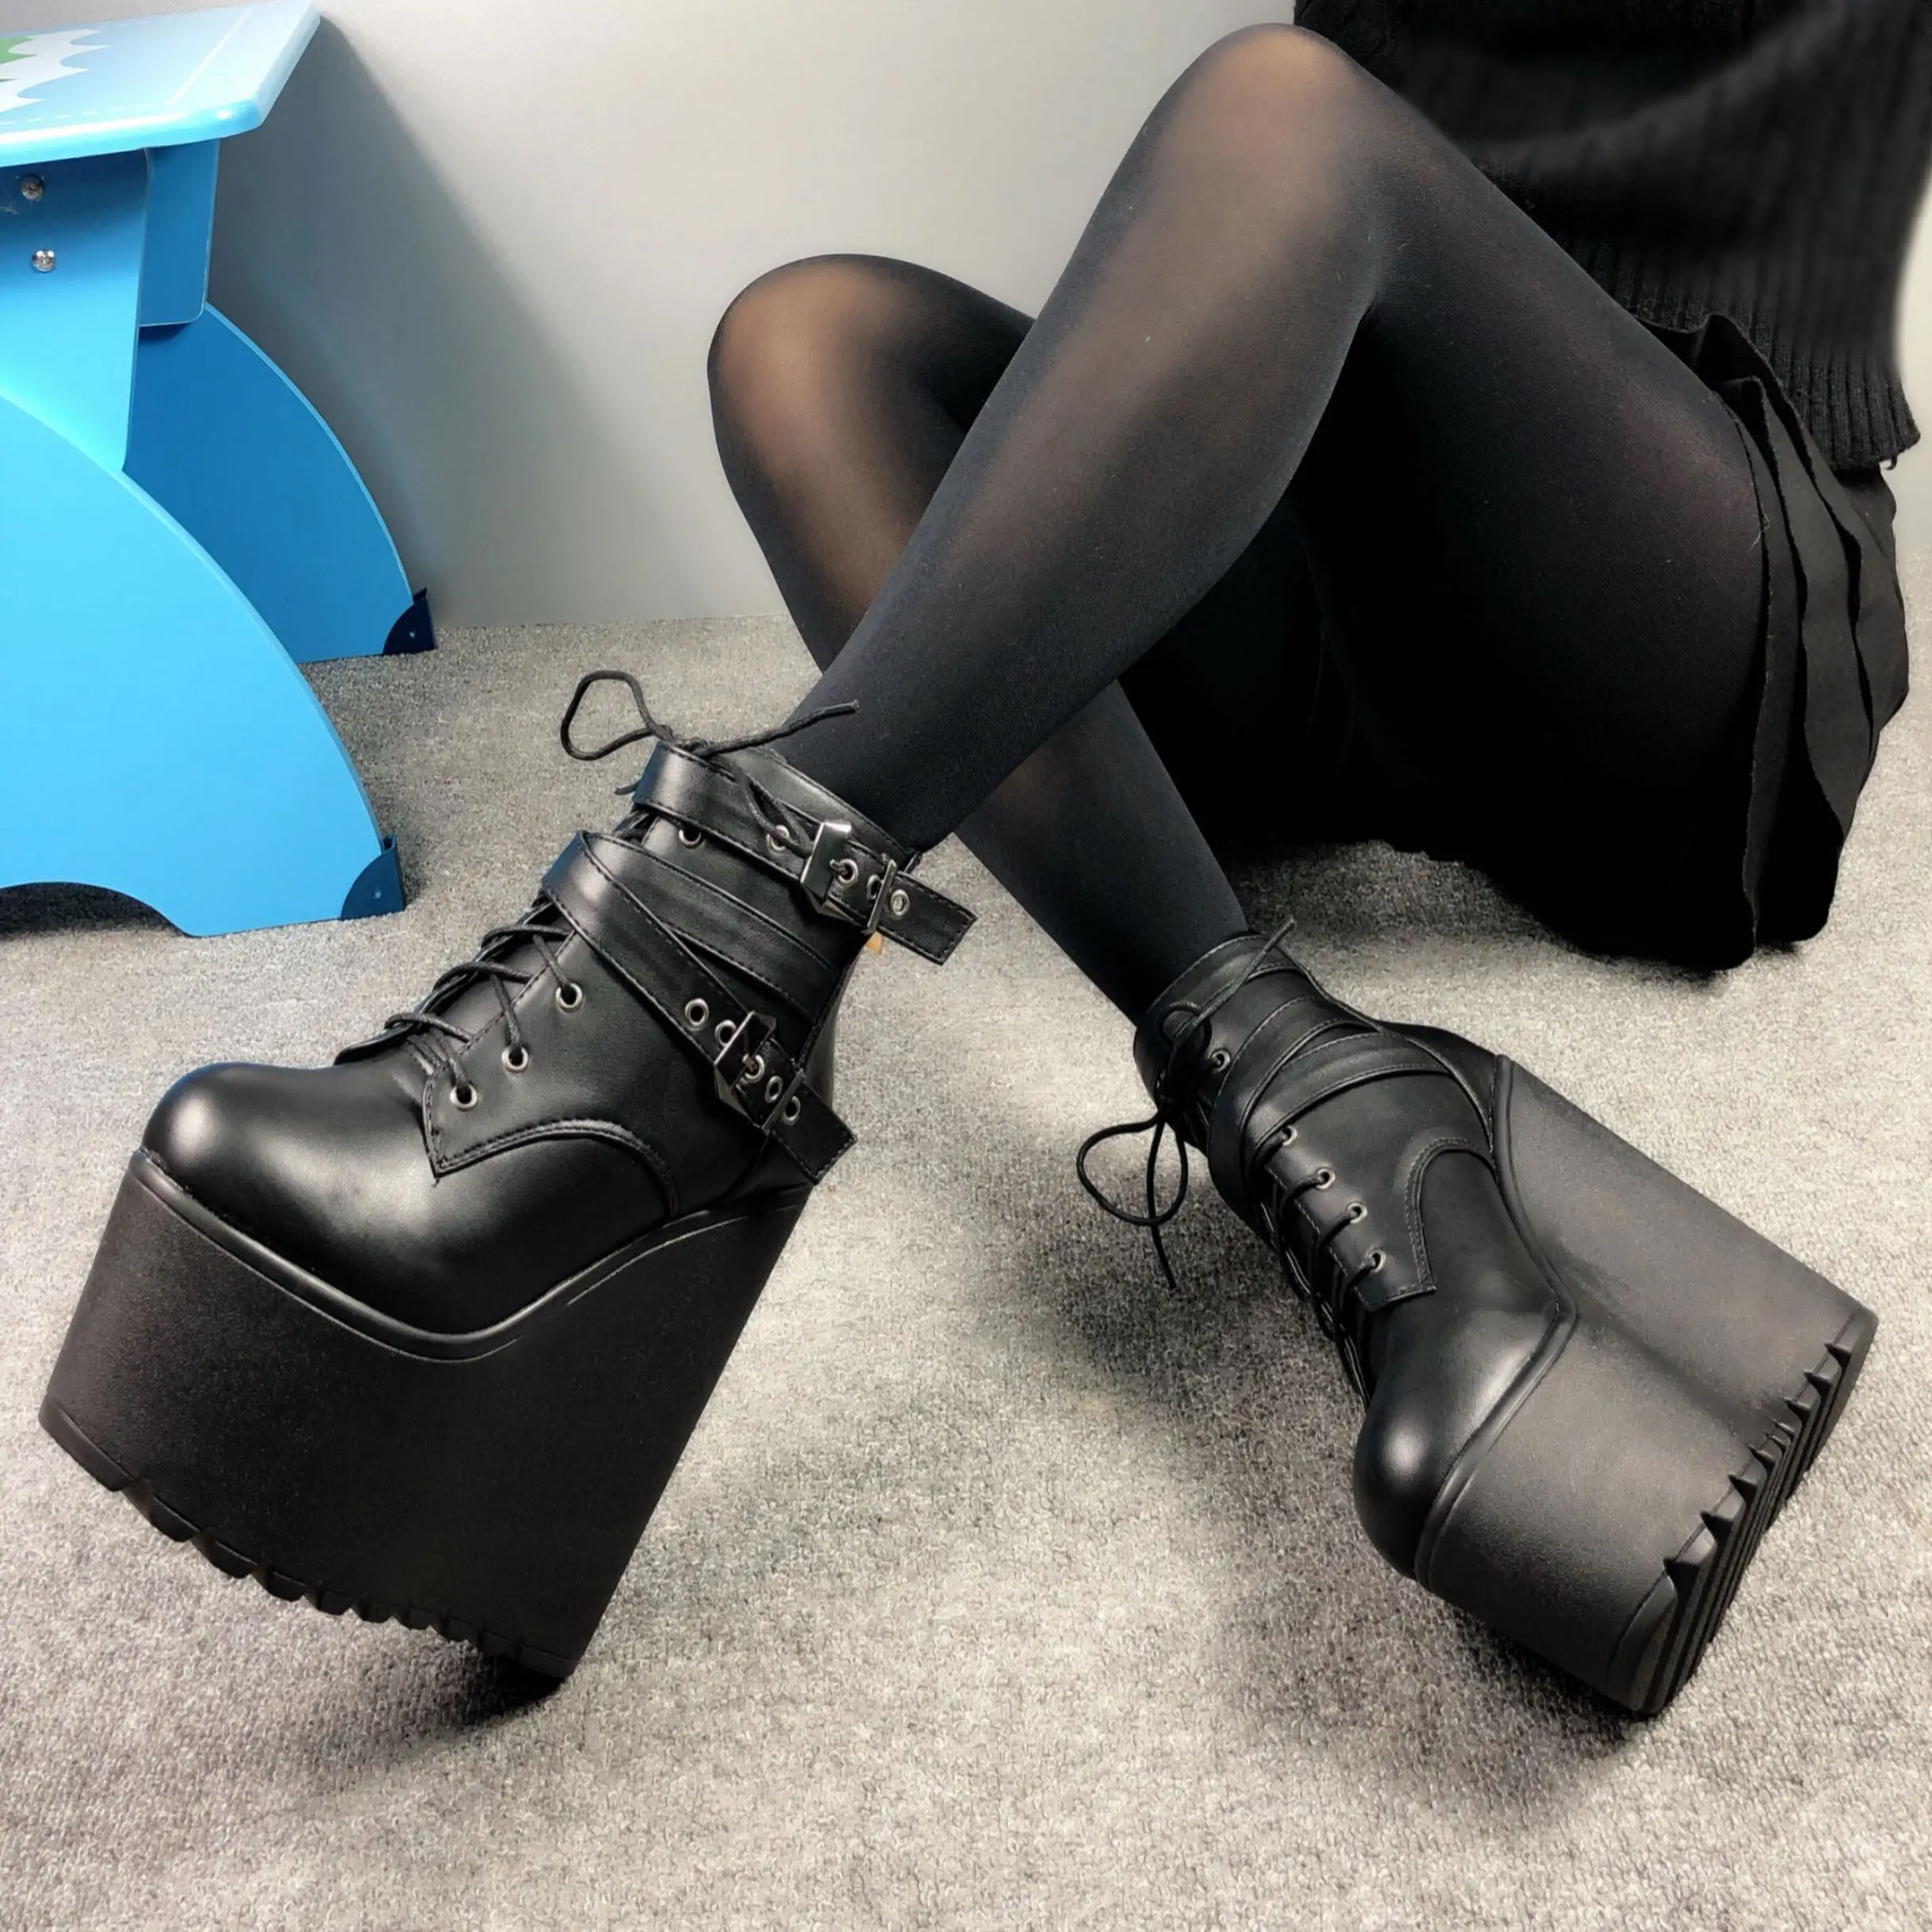 Ботильоны с клинообразным каблуком; цвет белый, черный резиновая подошва обувь ботинки на платформе Для женщин со шнуровкой осенние Высокие туфли на платформе на высоком каблуке; Каблук 16 см